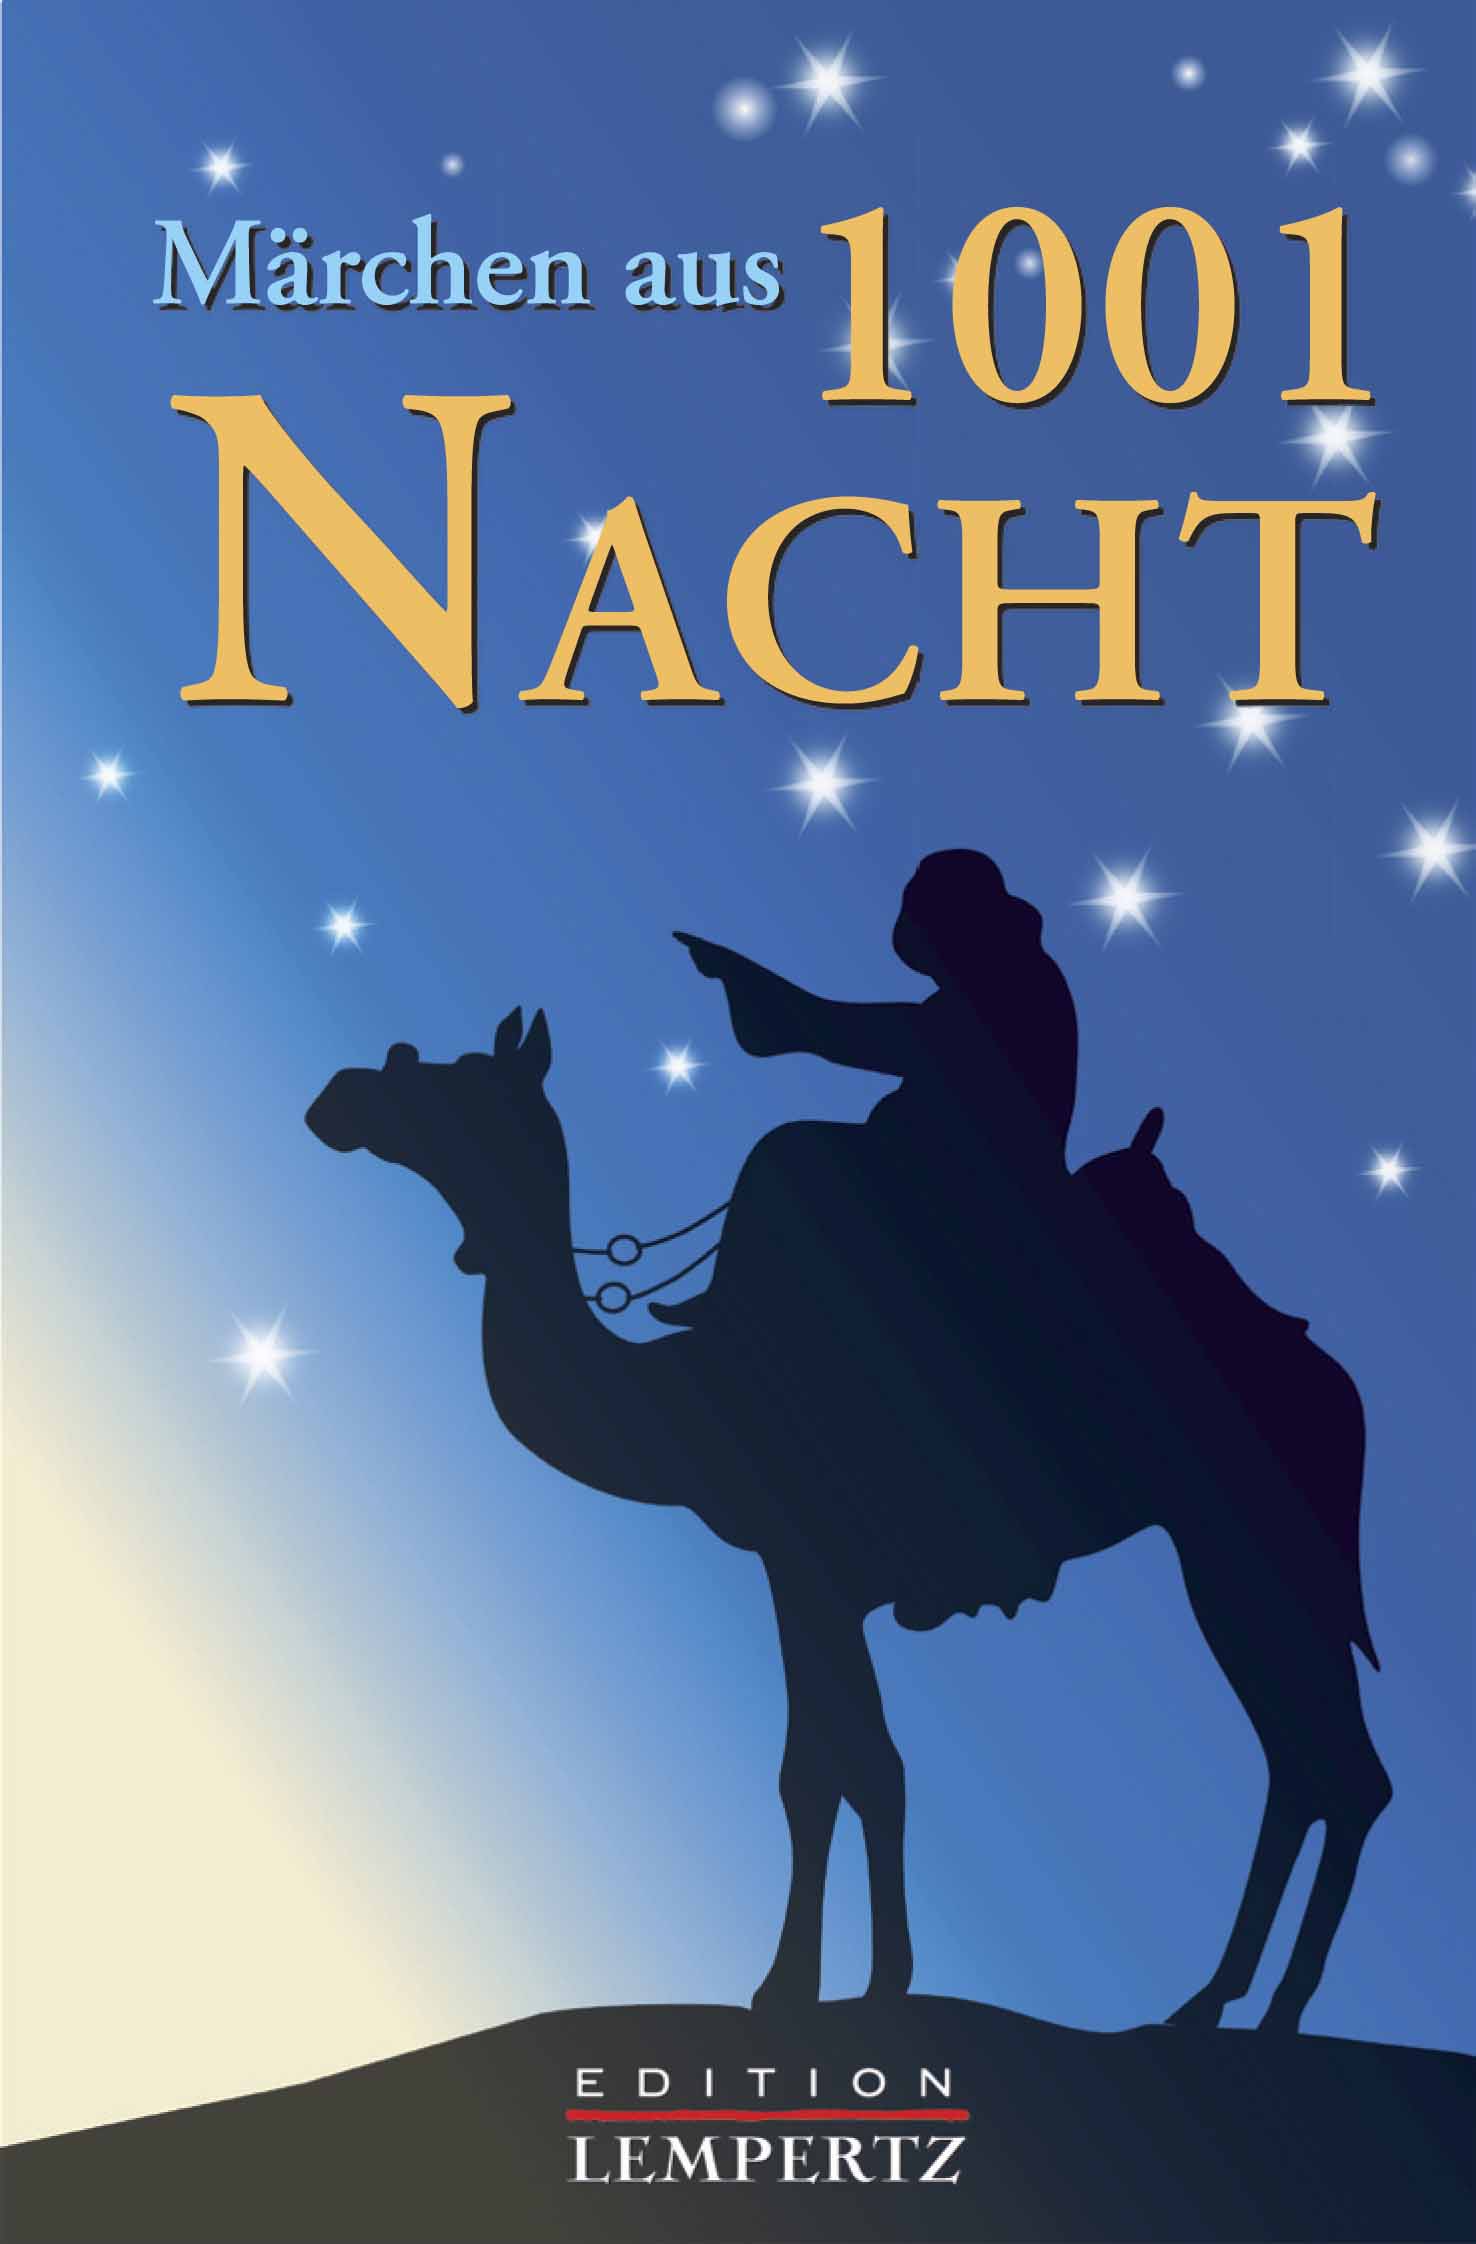 Märchen aus 1001 Nacht (Scheherazade - Edition Lempertz)